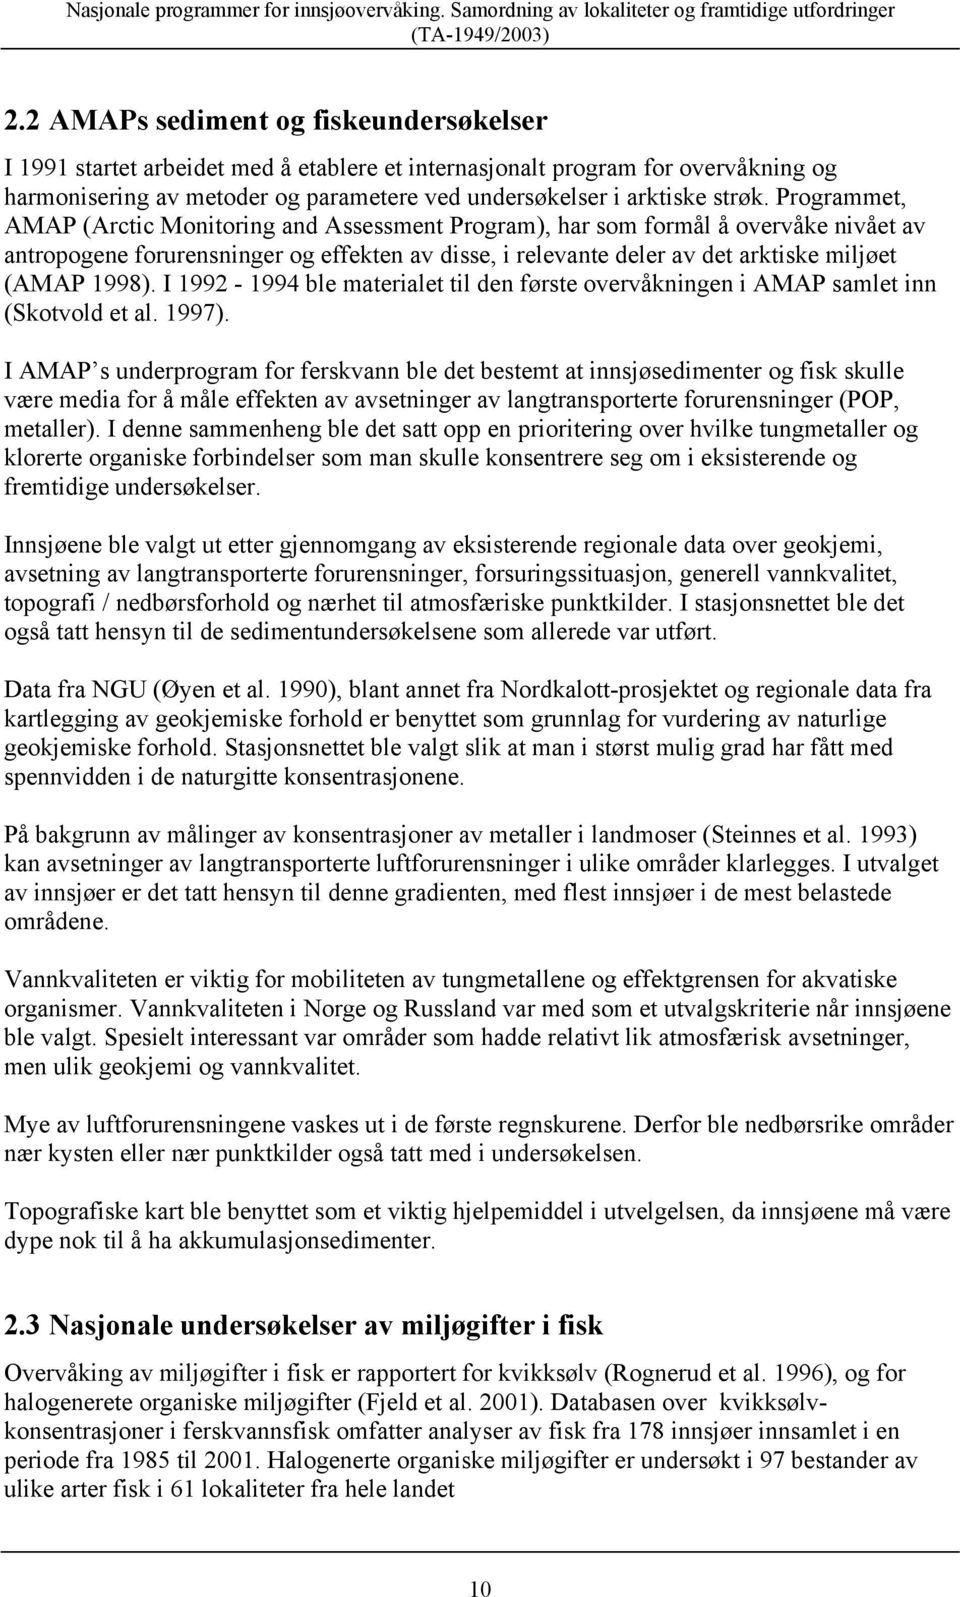 Programmet, AMAP (Arctic Monitoring and Assessment Program), har som formål å overvåke nivået av antropogene forurensninger og effekten av disse, i relevante deler av det arktiske miljøet (AMAP 1998).